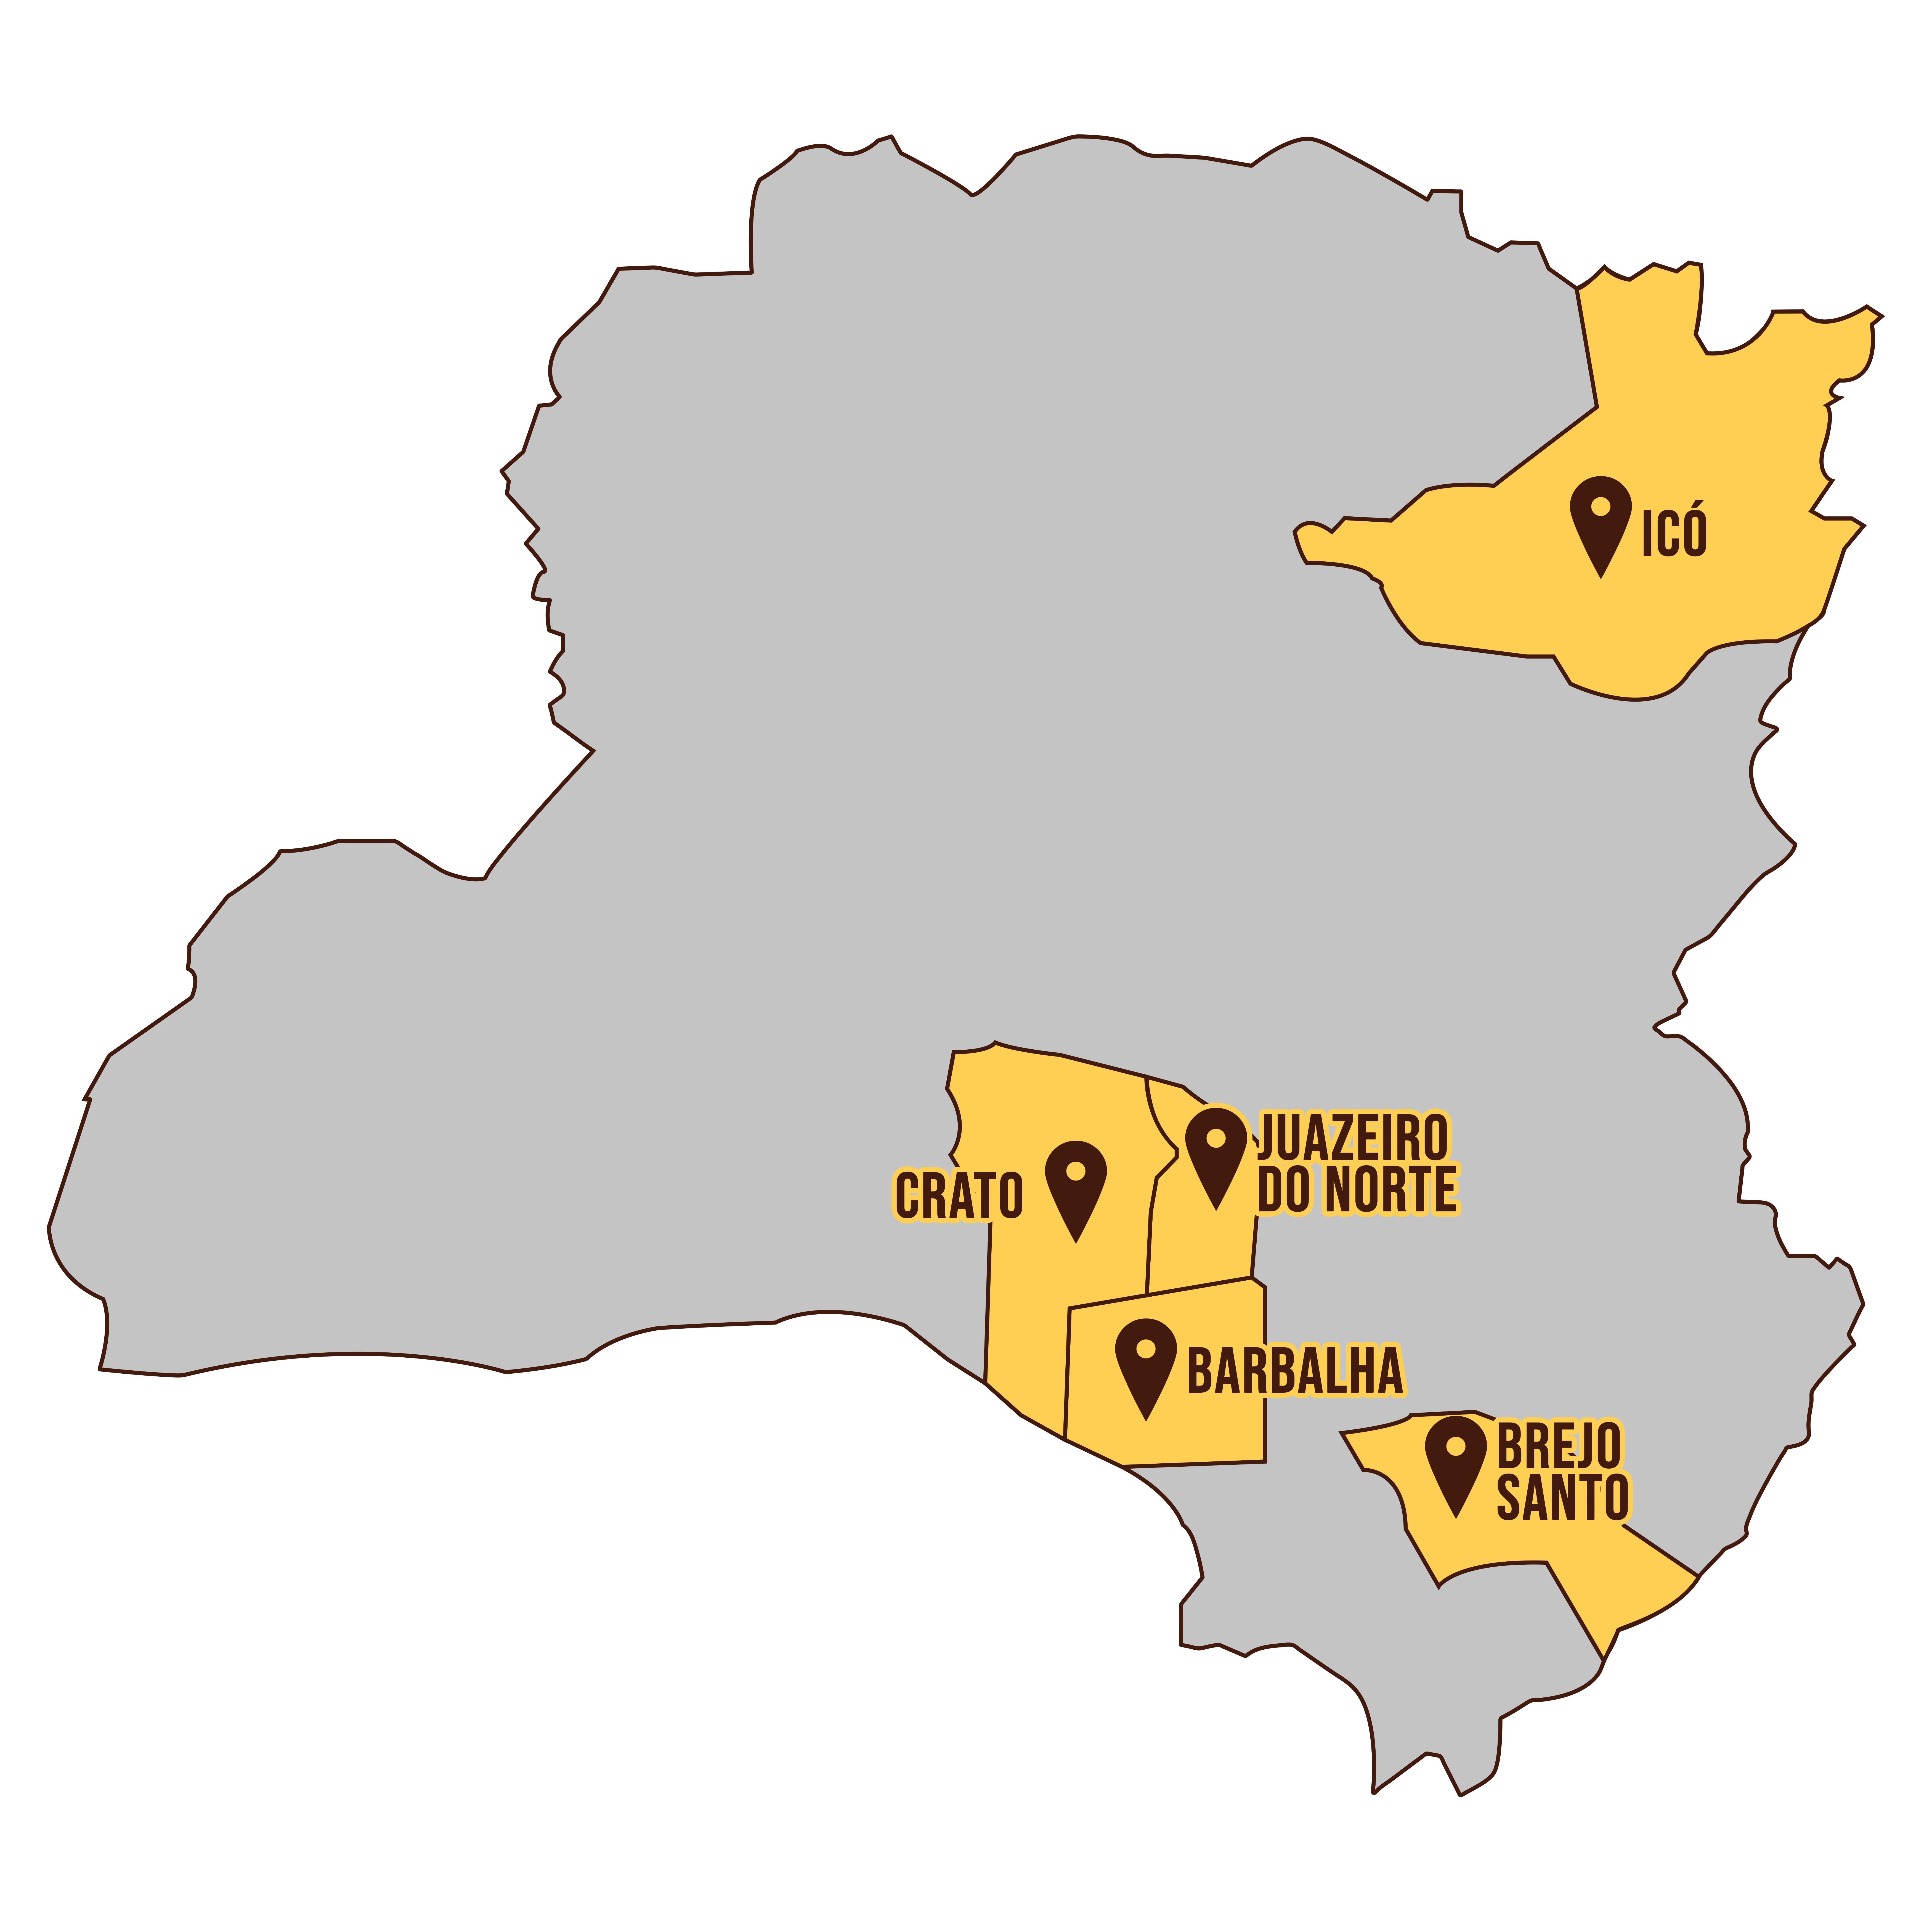 Mapa da macrorregião do Cariri/Centro-Sul cearense, com destaque para as cidades de Juazeiro do Norte, Crato, Barbalha, Brejo Santo e Icó